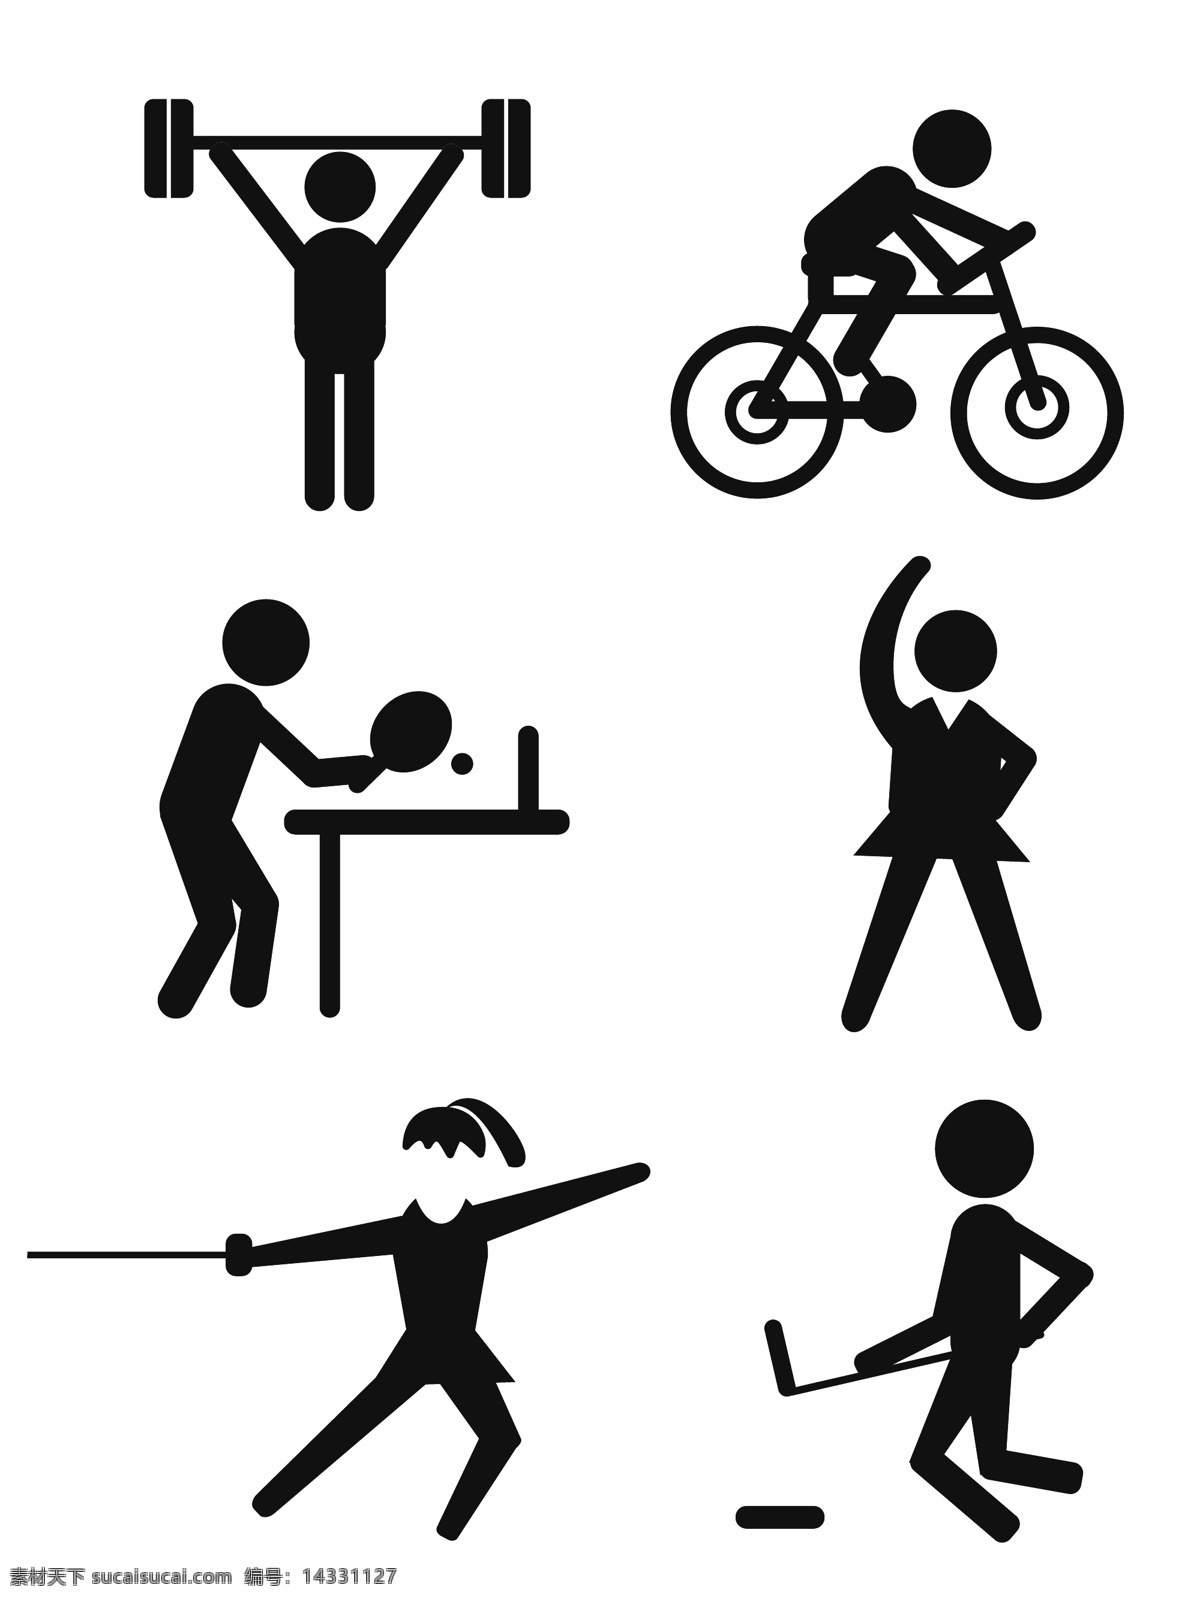 公共 标识 运动 小人 图标 矢量 元素 公共标识 骑自行车 健美 运动小人 小人图标 运动图标 运动标识 举重 兵乓球 剑击 冰球